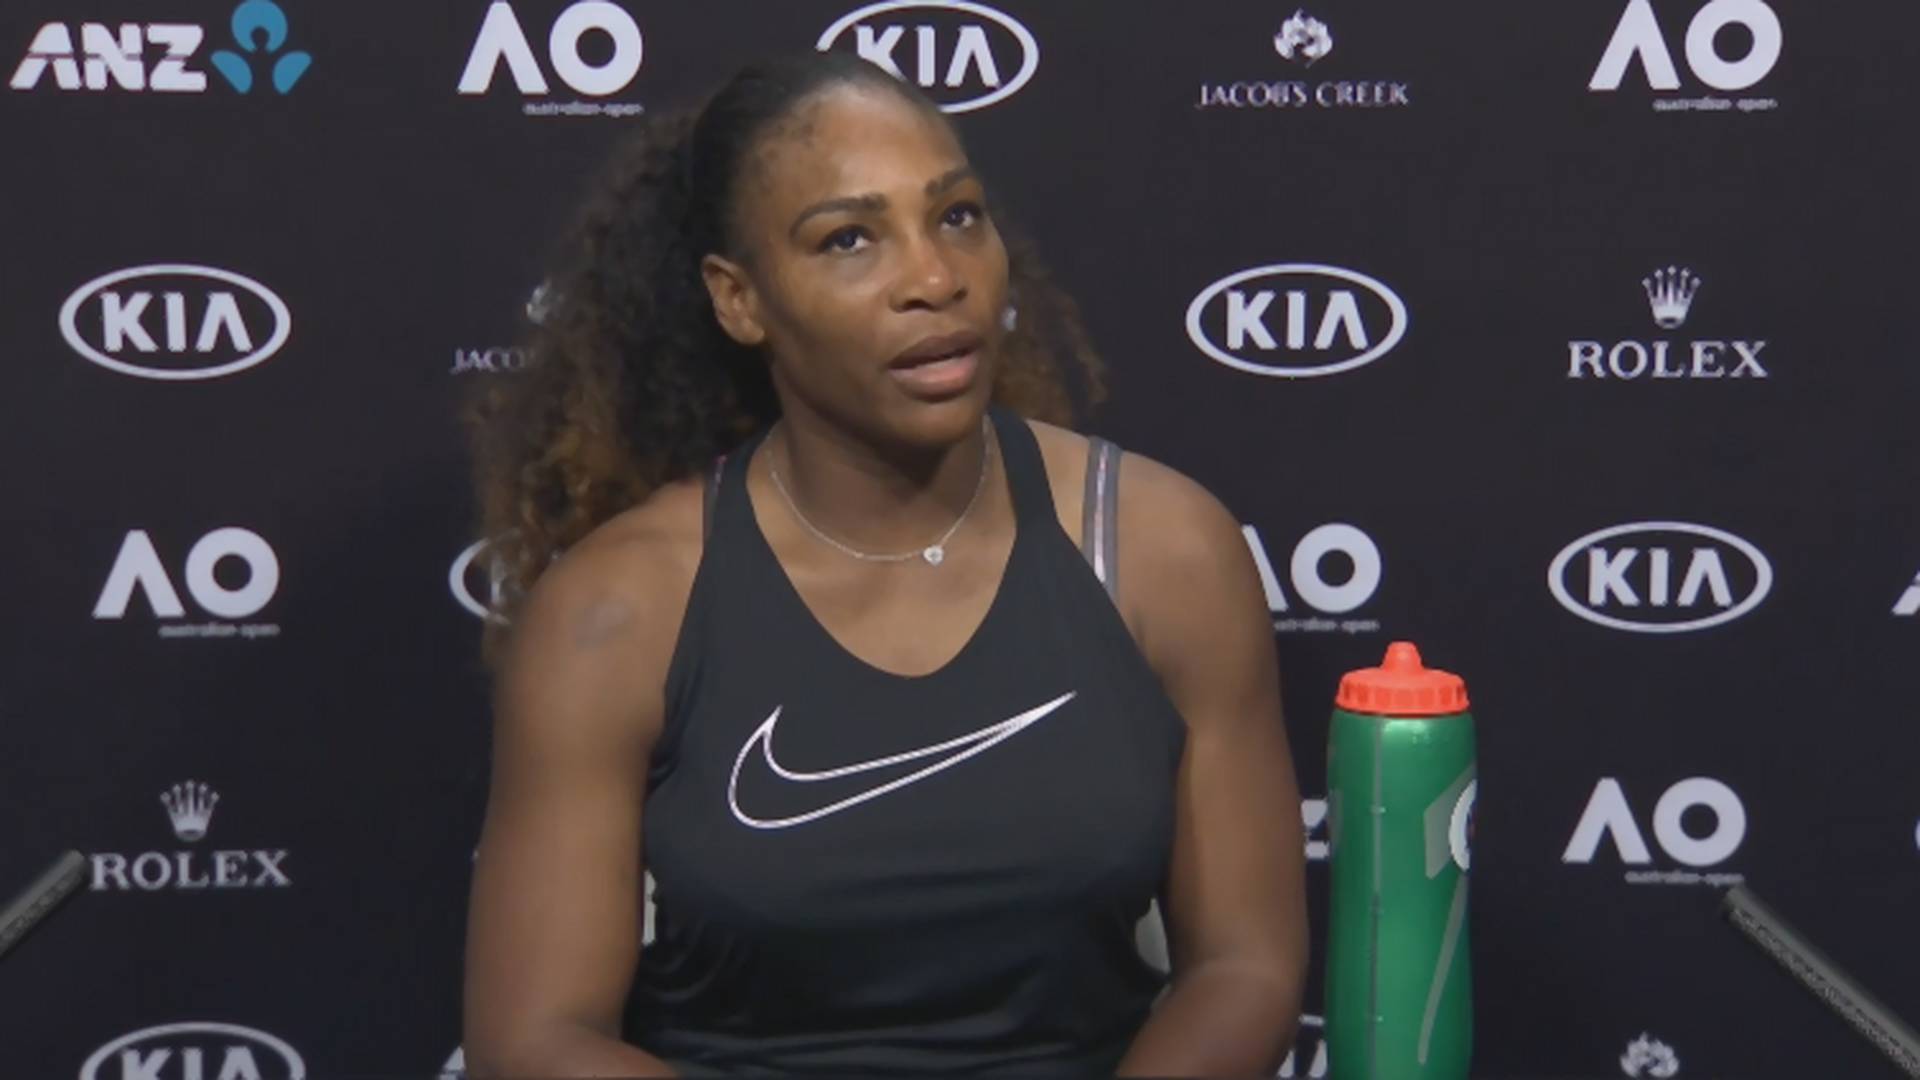 Ne kači se sa šampionkom: Serena opasno spustila bezobraznog novinara